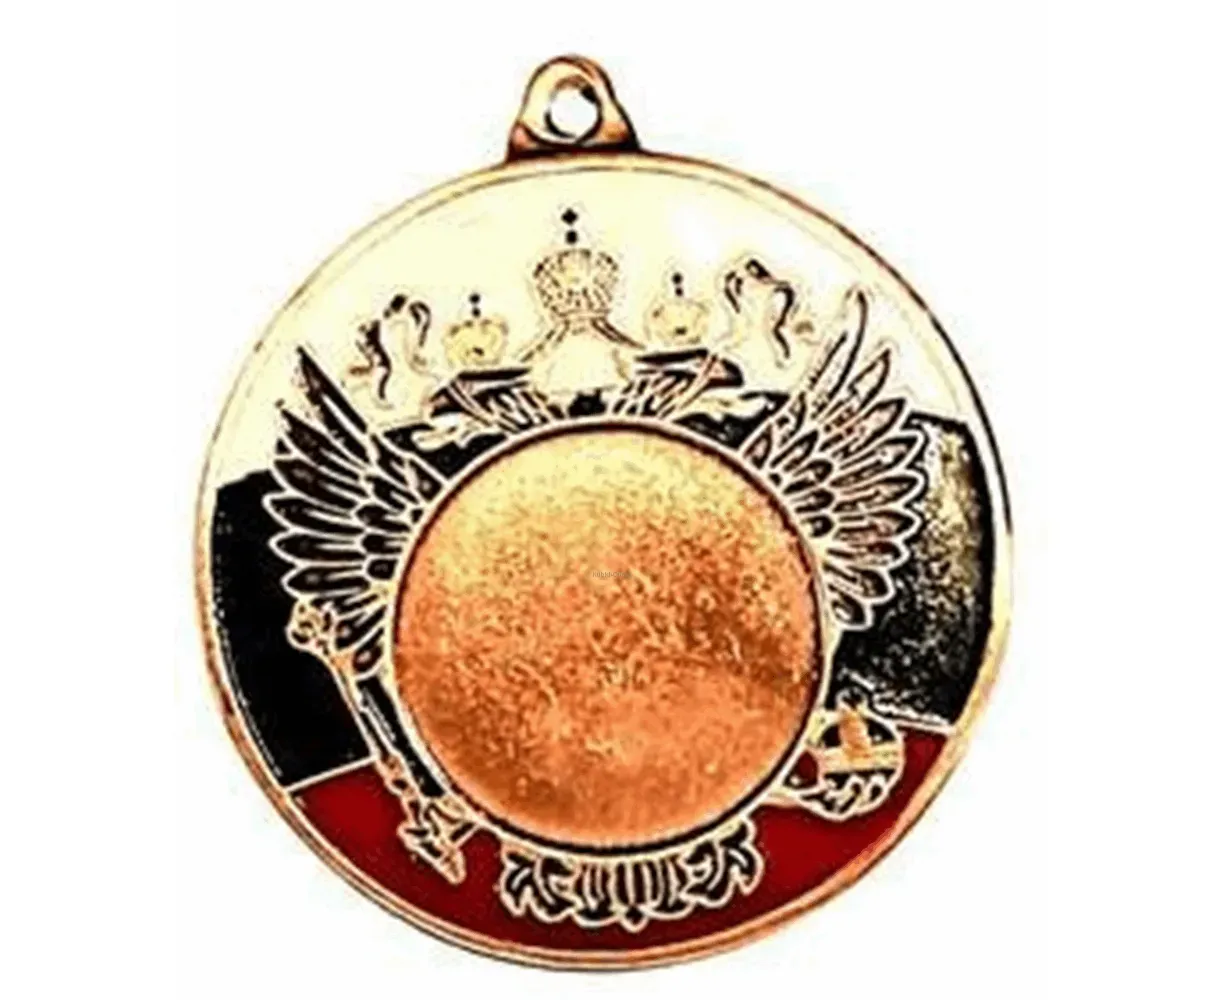 Medal rus. Медаль rus3. Медали с Российской символикой. Медали Rus 60. Медали ру.